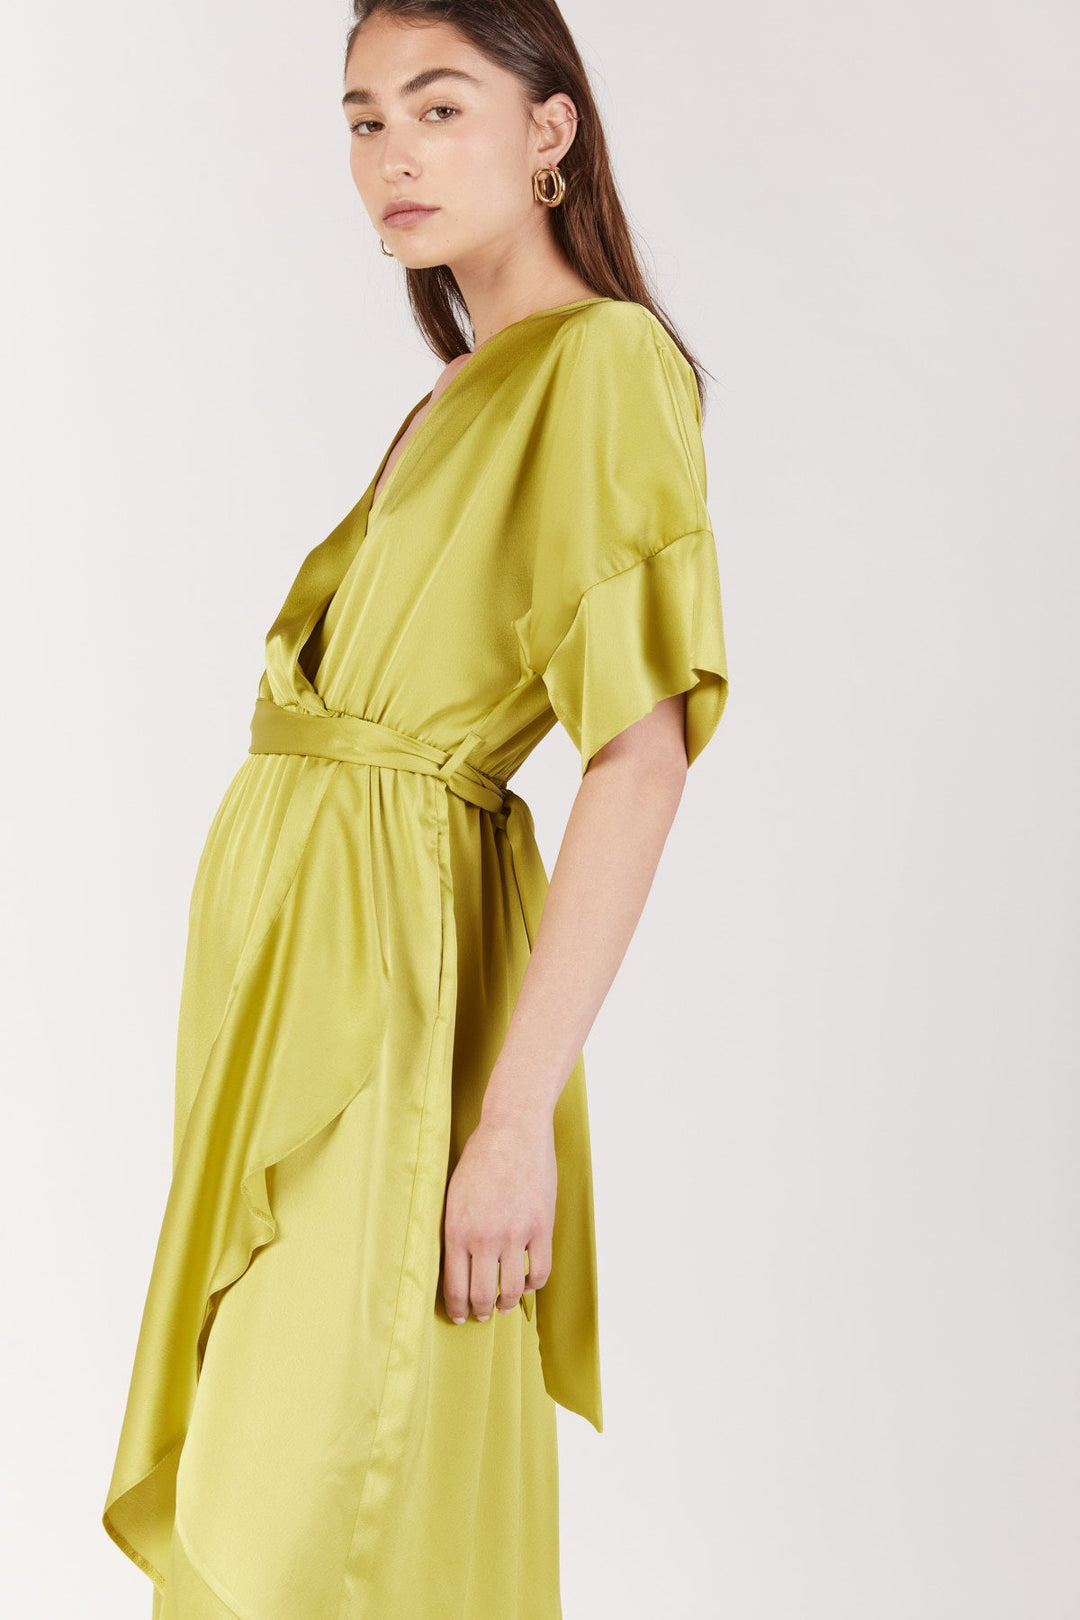 שמלת נולה בצבע צהוב - Dana Sidi